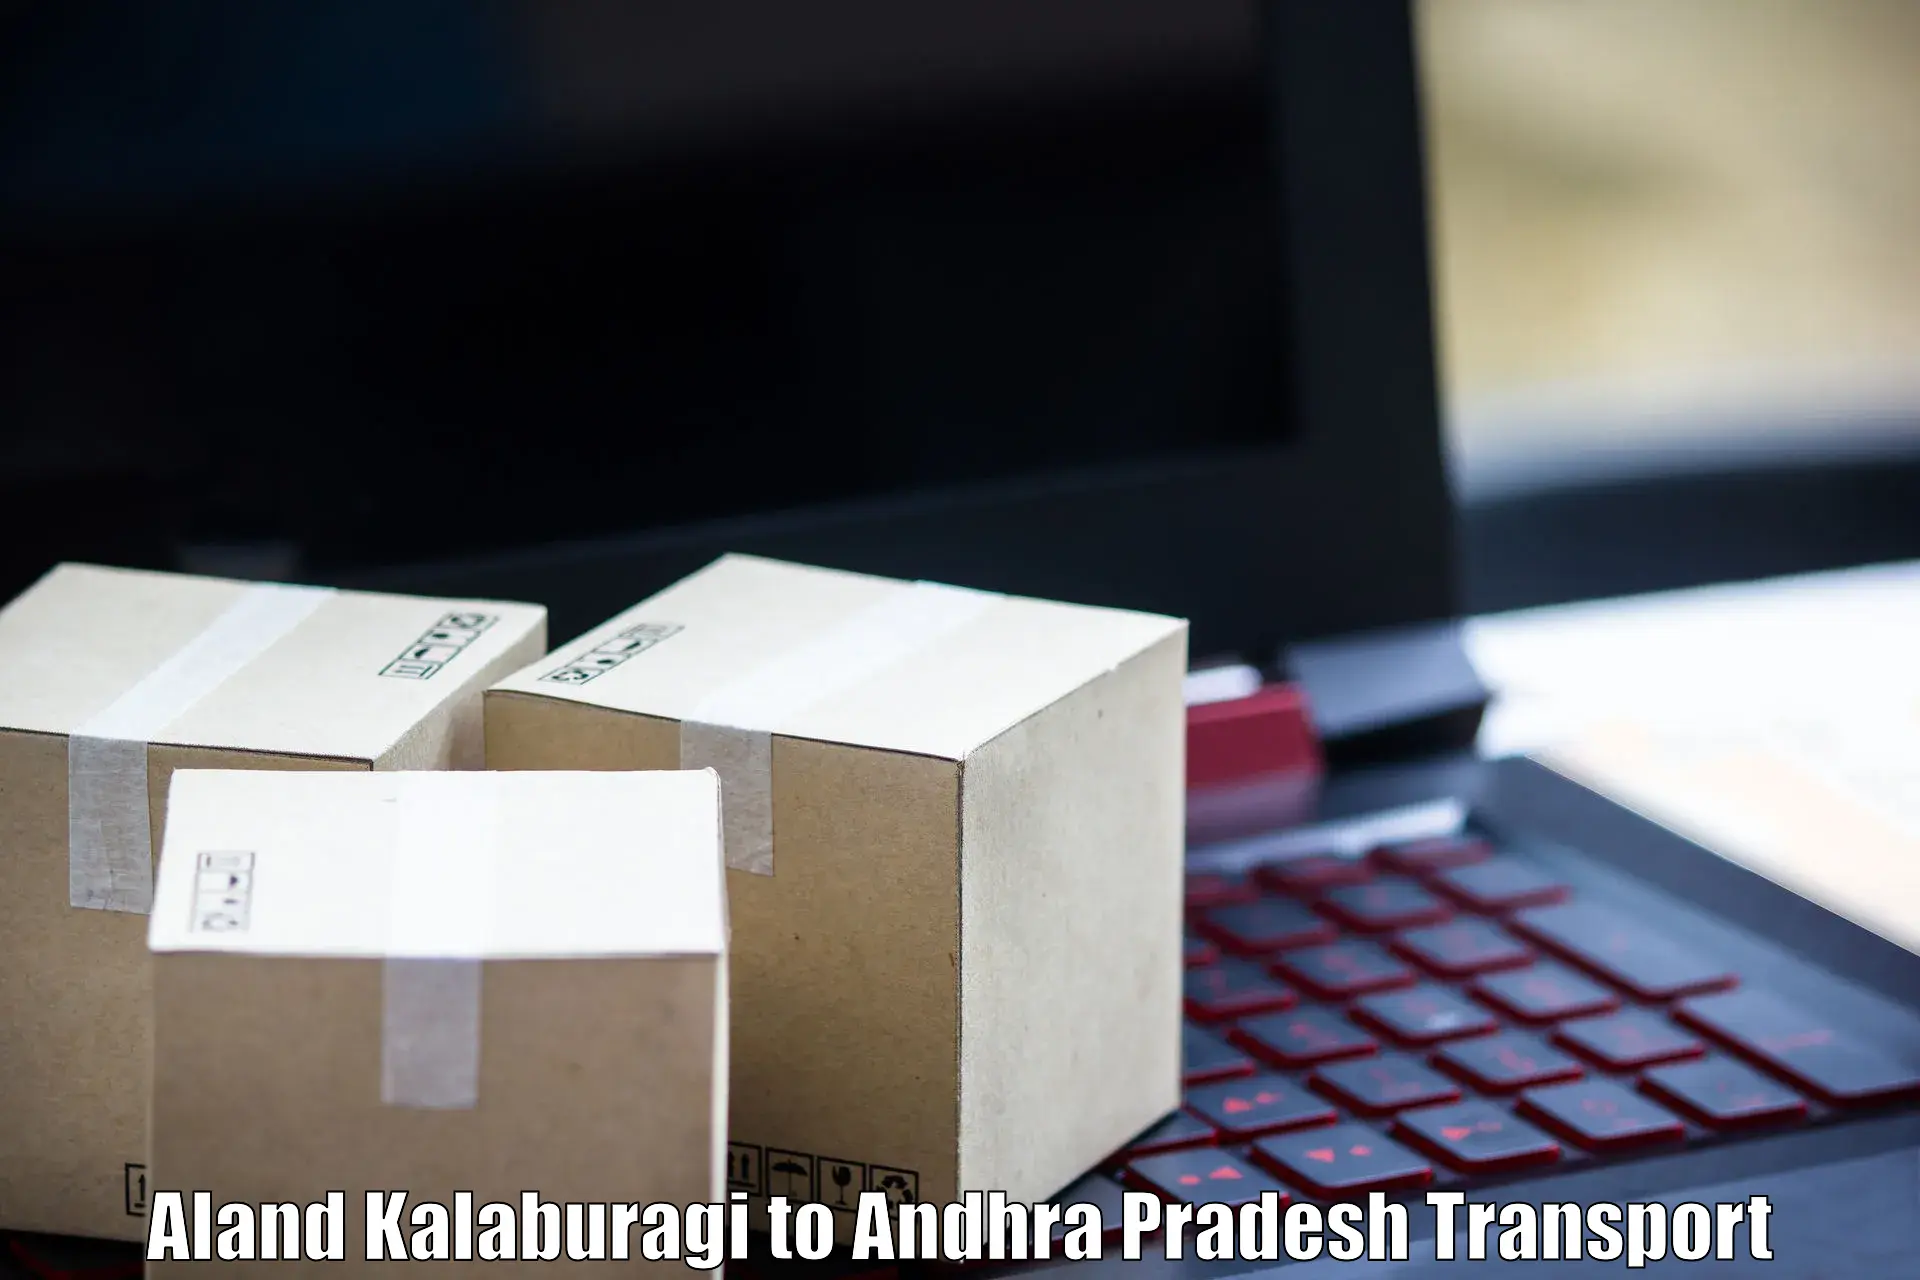 Pick up transport service in Aland Kalaburagi to Palakonda